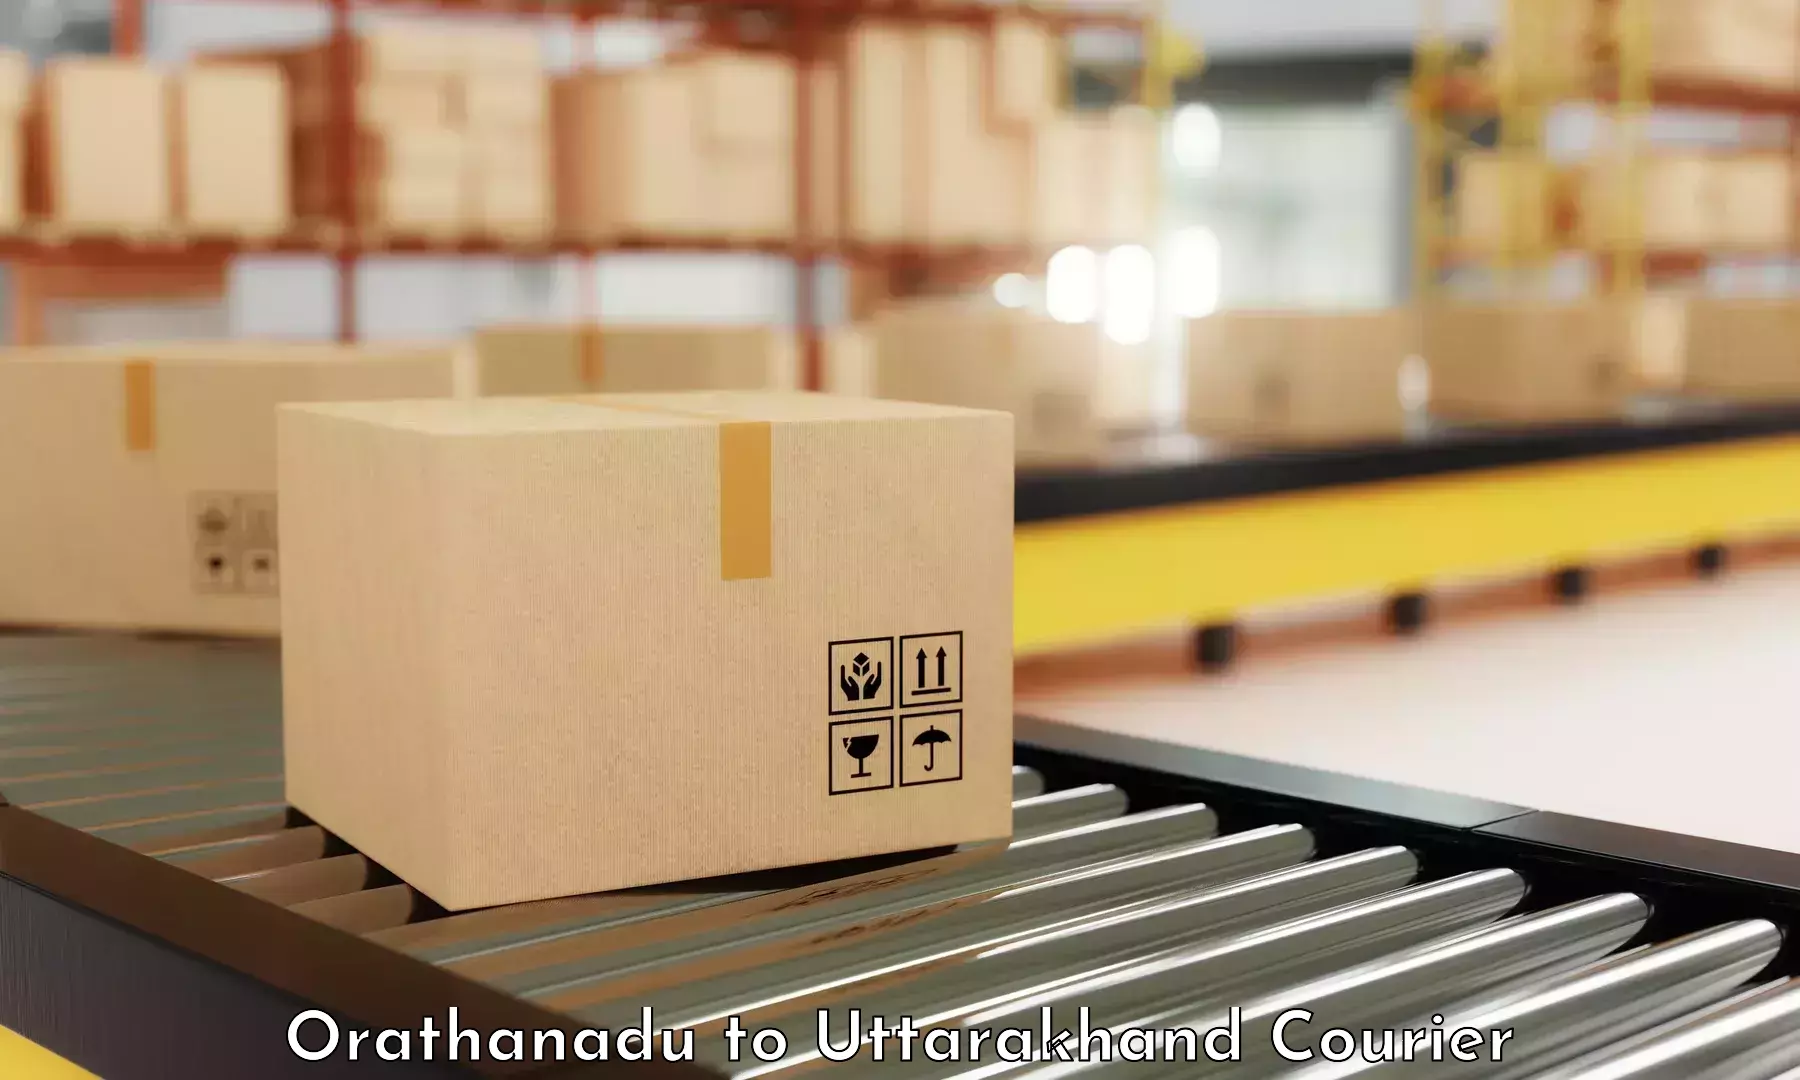 Efficient parcel service in Orathanadu to Laksar